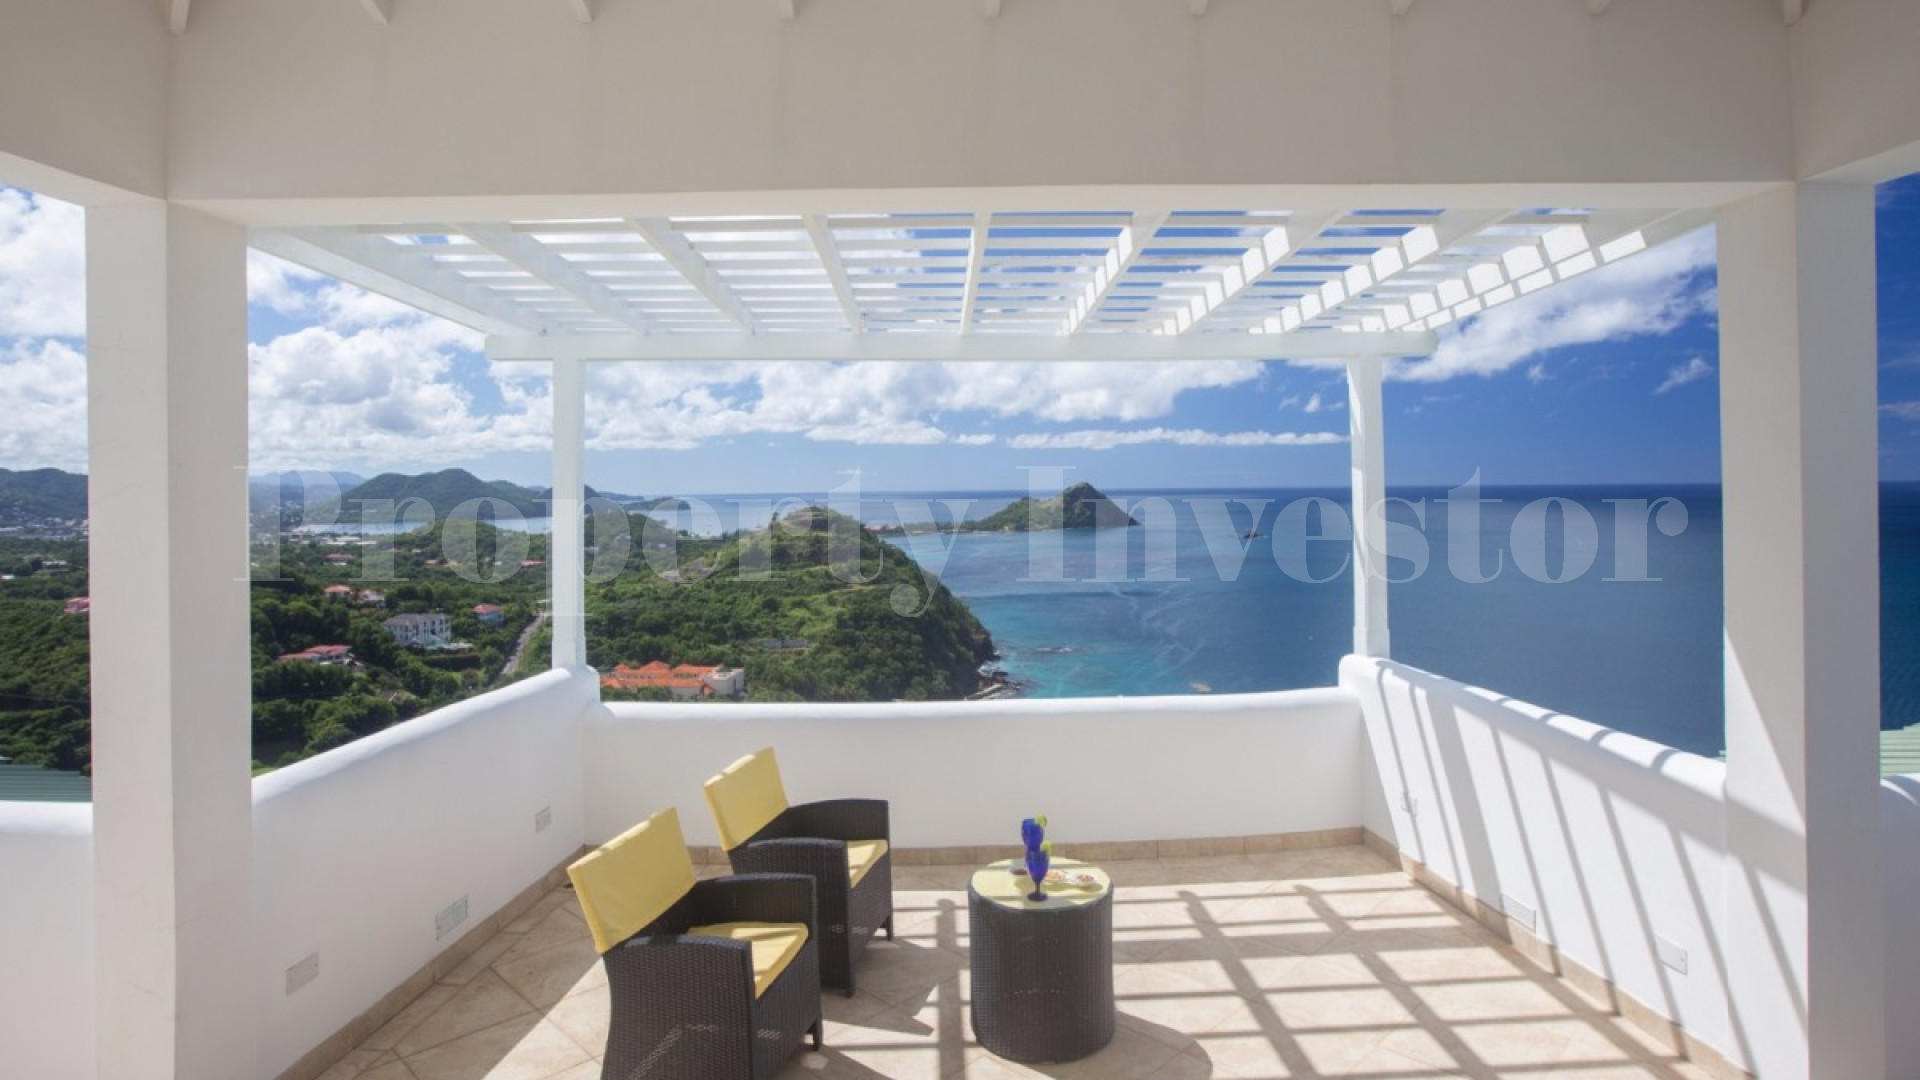 Stunning 6 Bedroom Hillside Designer Villa in St Lucia